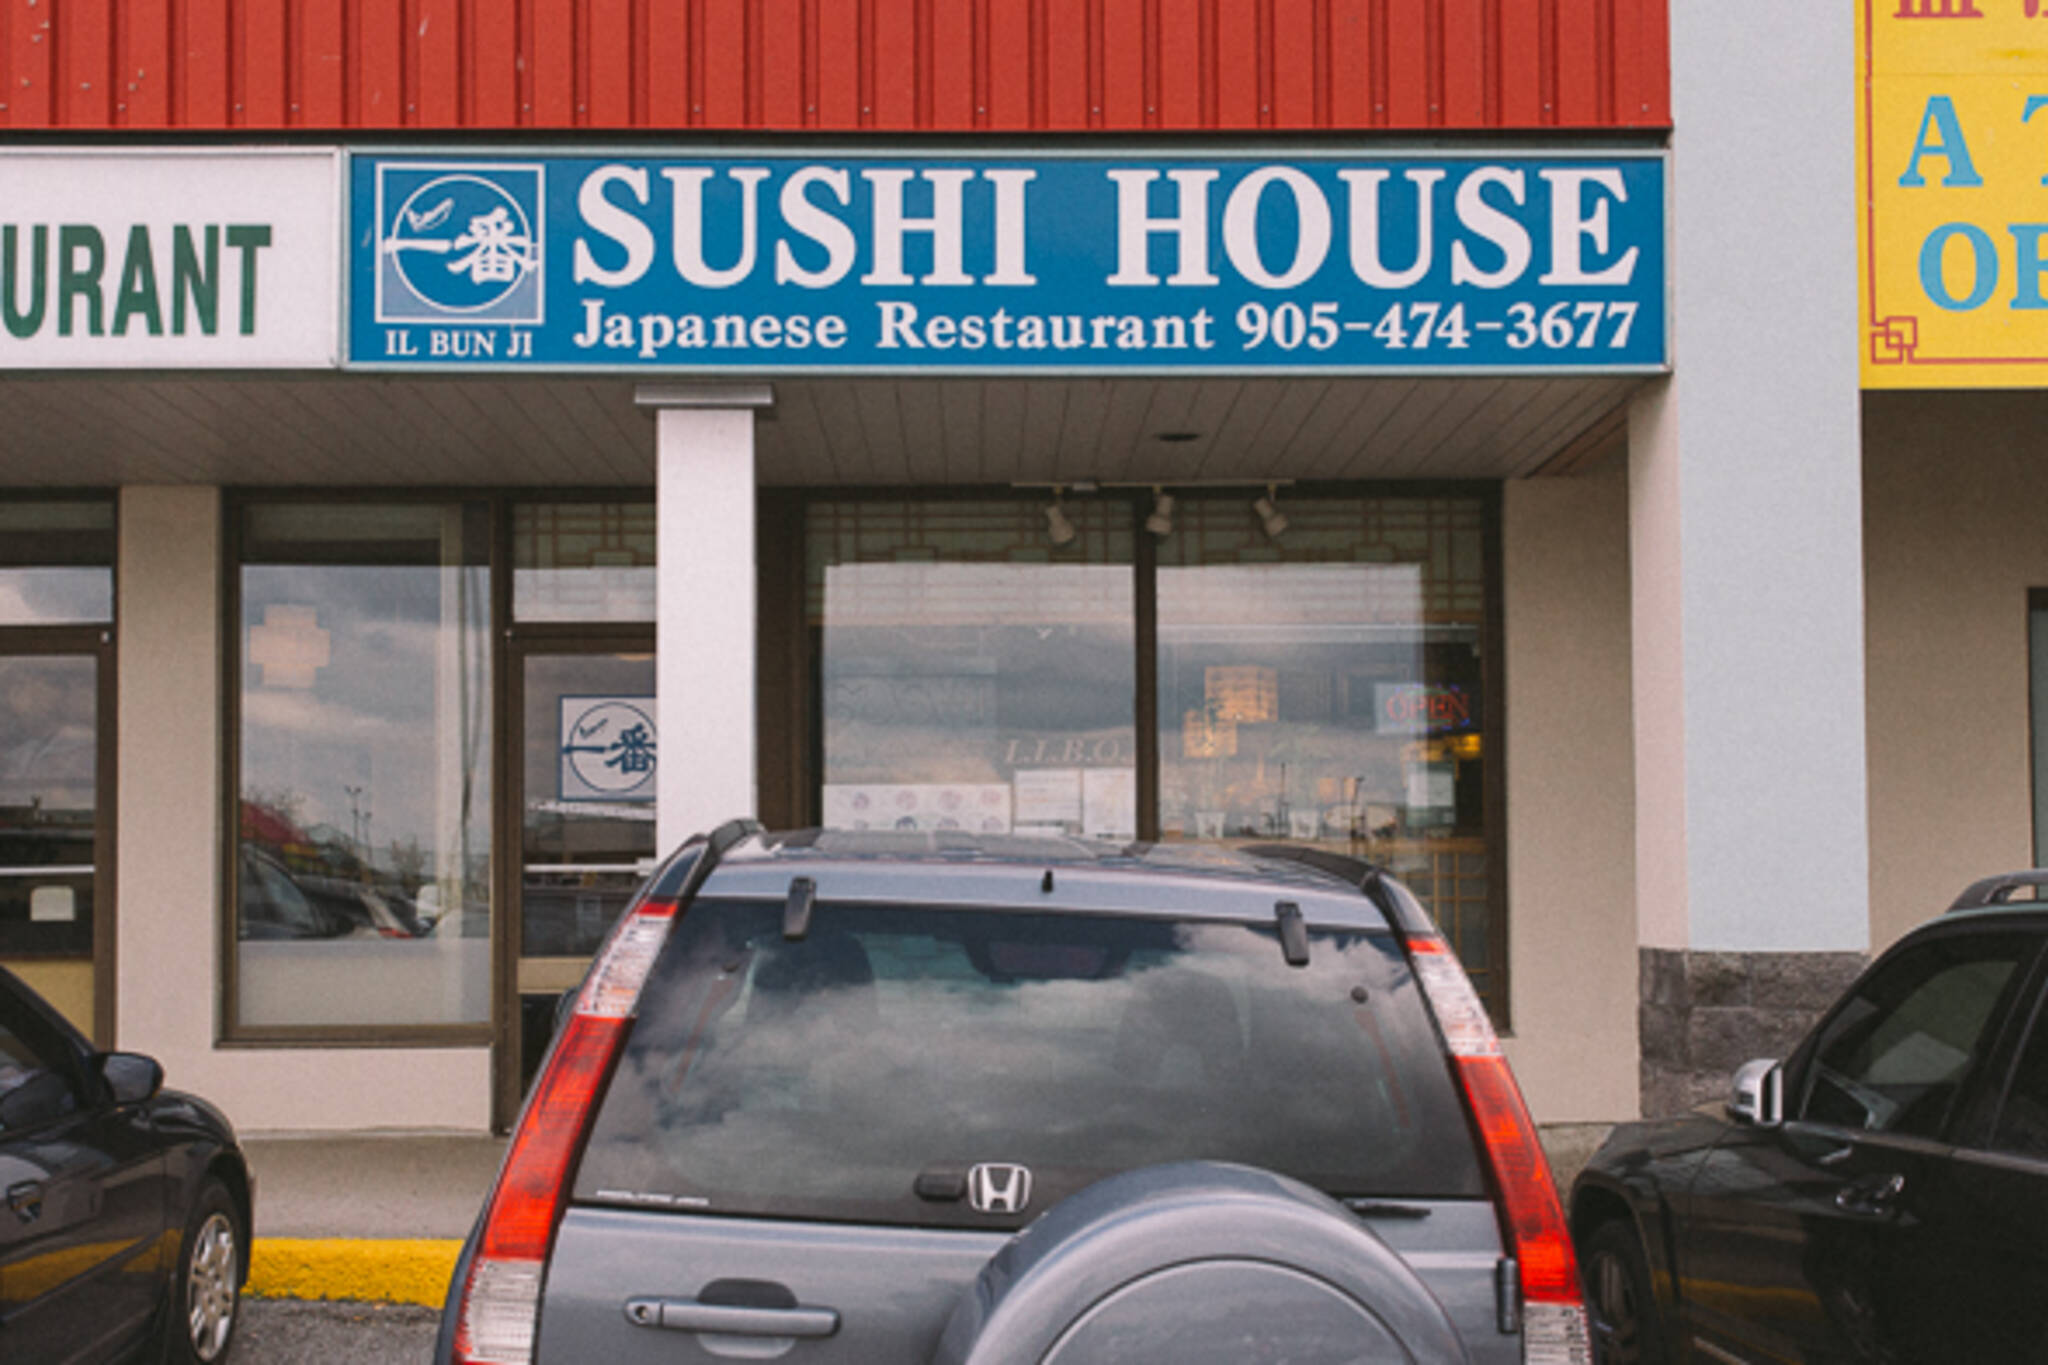 il bun ji sushi house